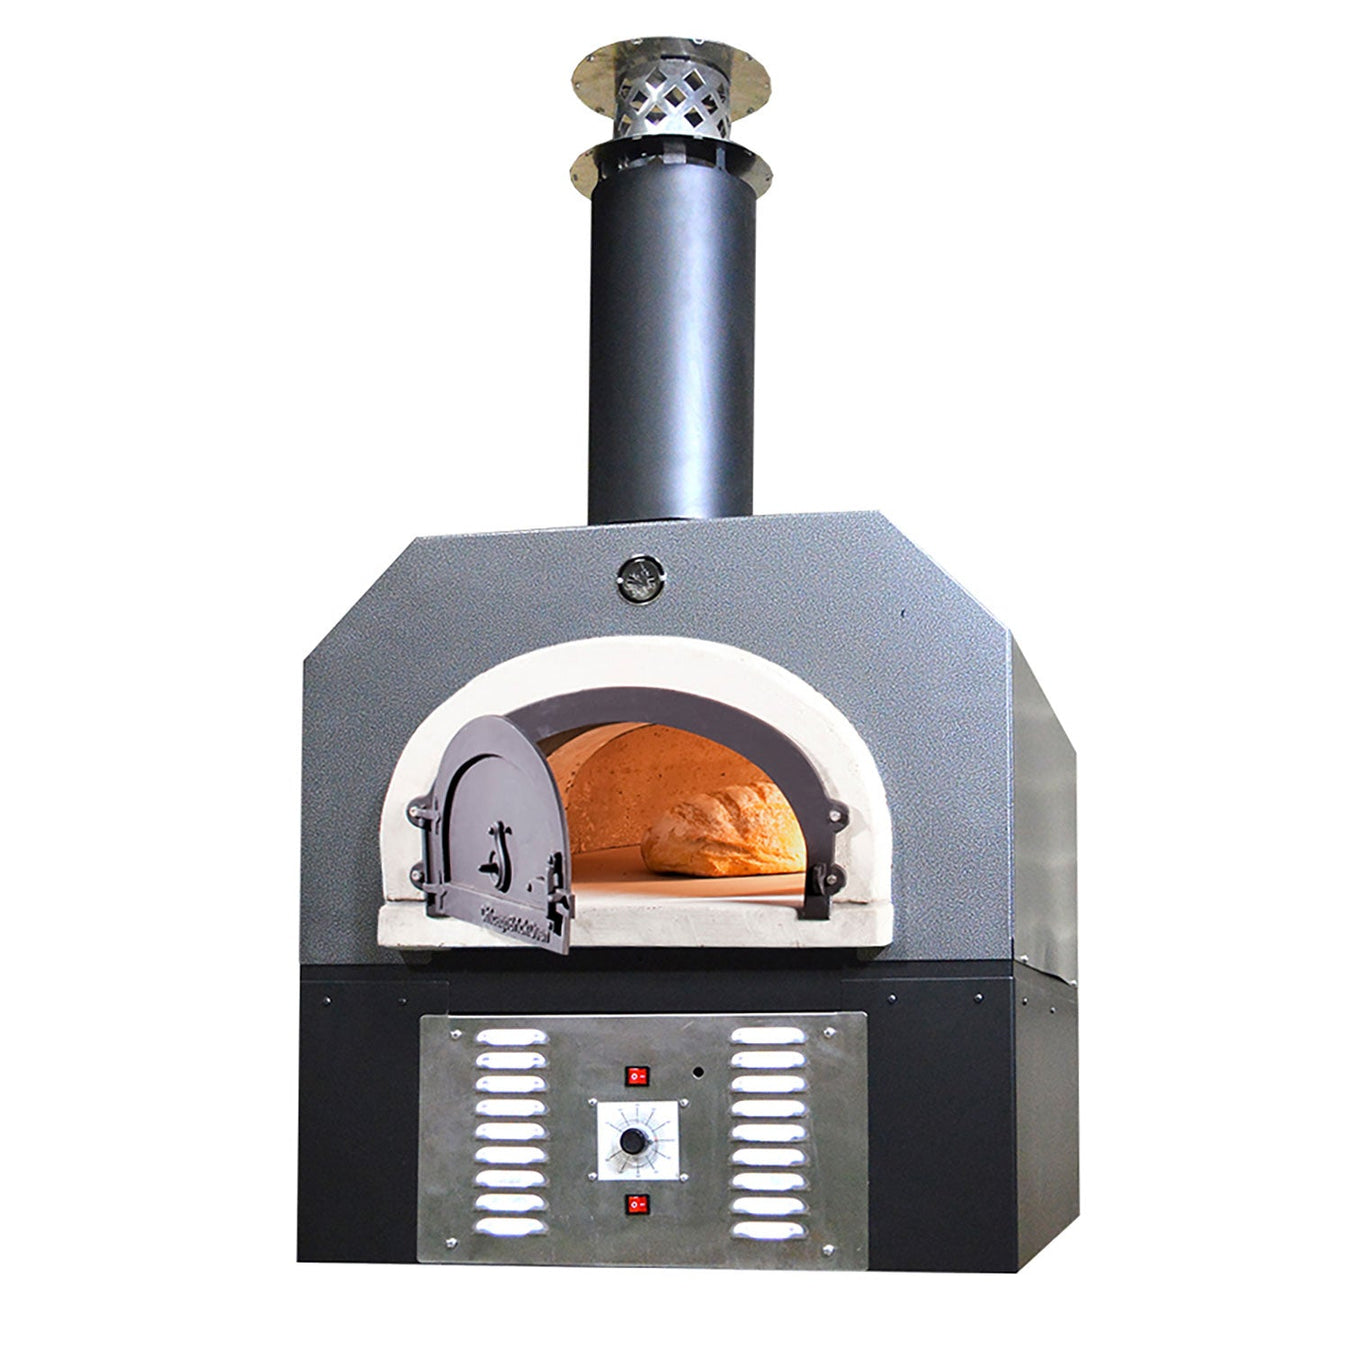 Hybrid Pizza Ovens